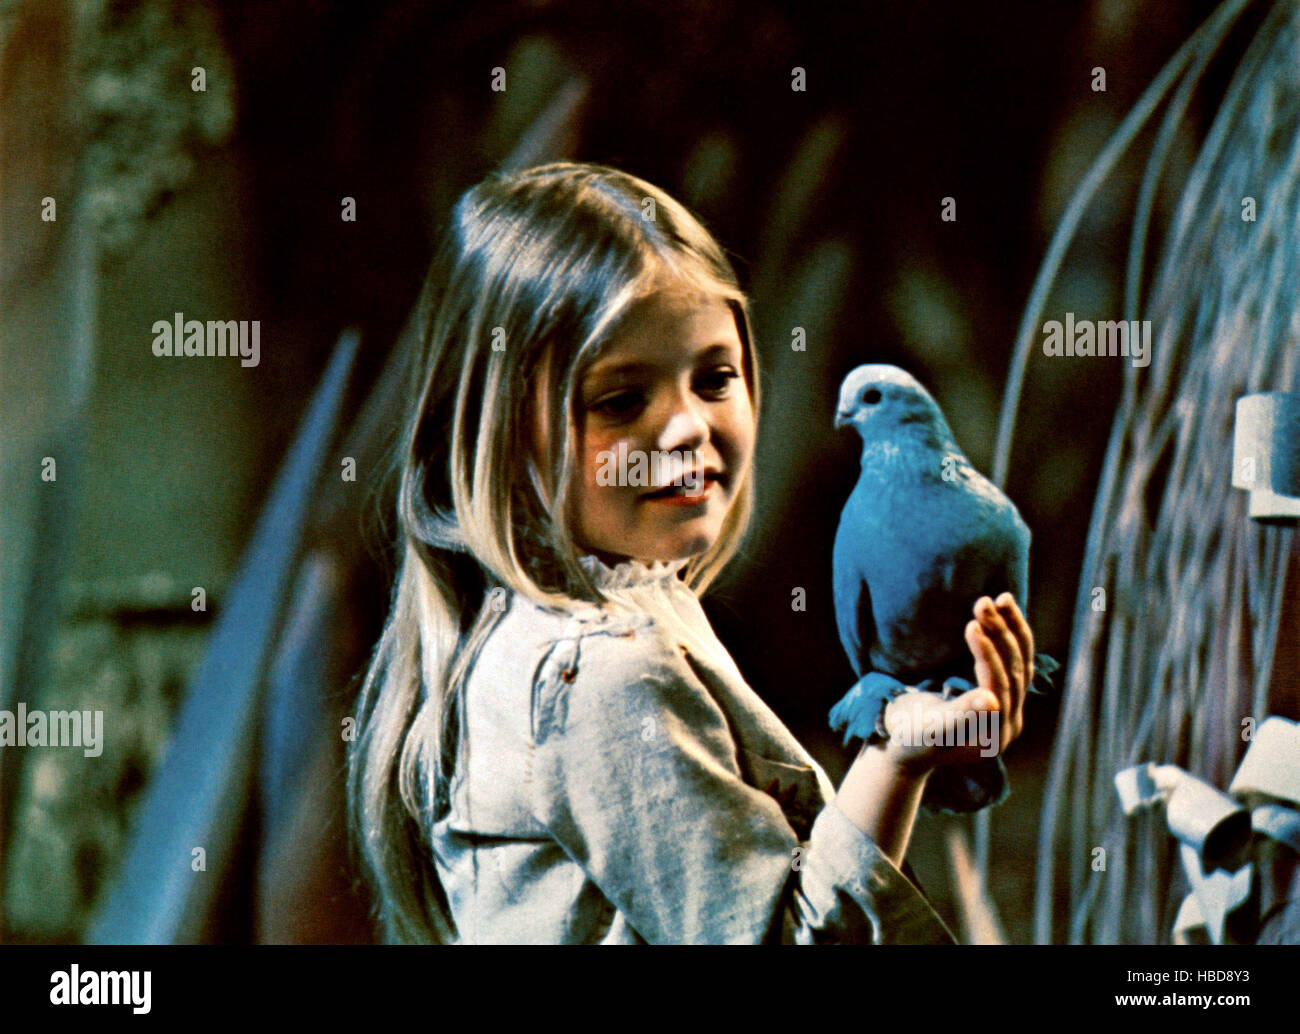 Дети синей птицы. Элизабет Тейлор синяя птица. Джейн фонда синяя птица.